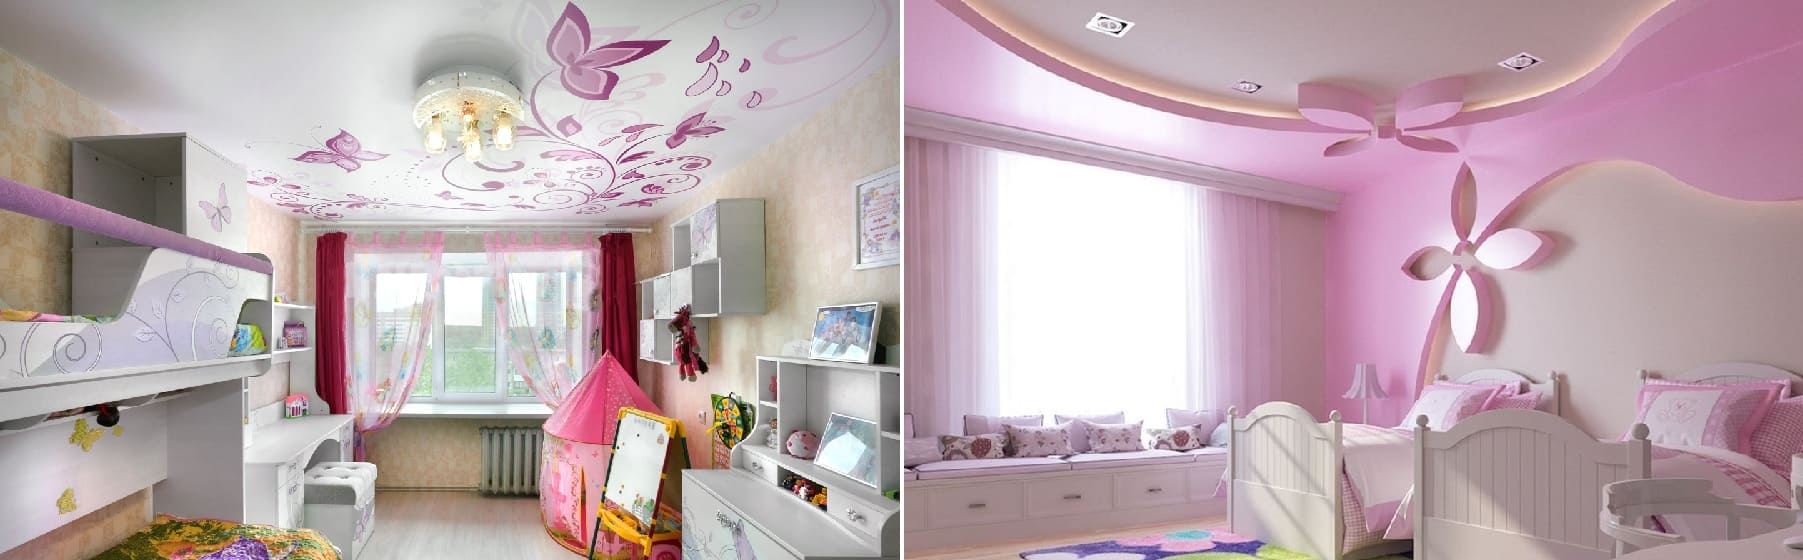 Заказать натяжные потолки в детскую комнату для девочки - компания Alezi